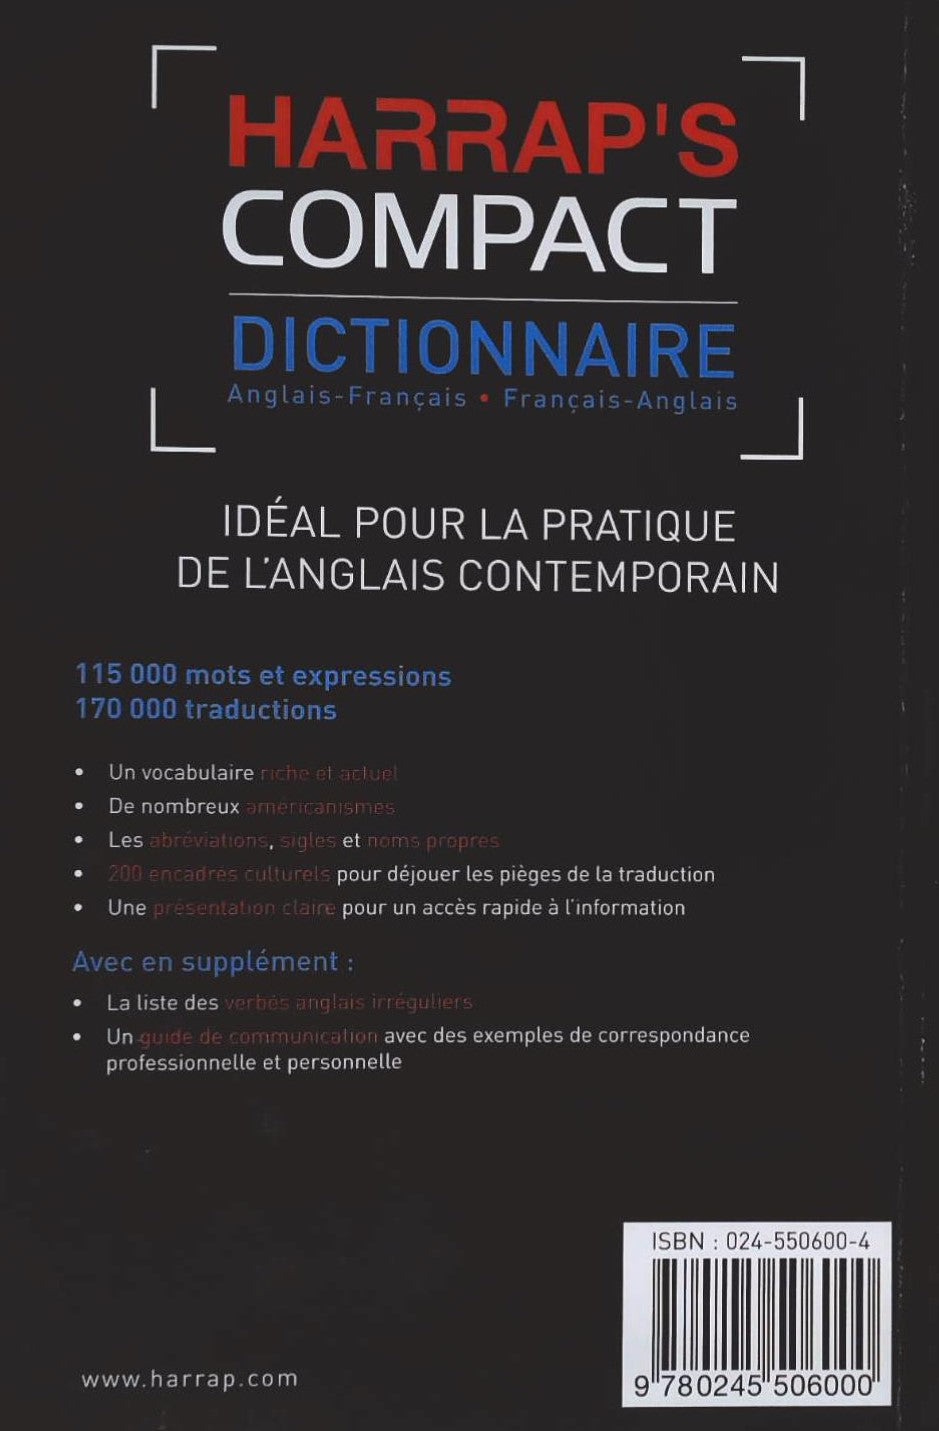 Harrap's Compact Dictionnaire Anglais-Français